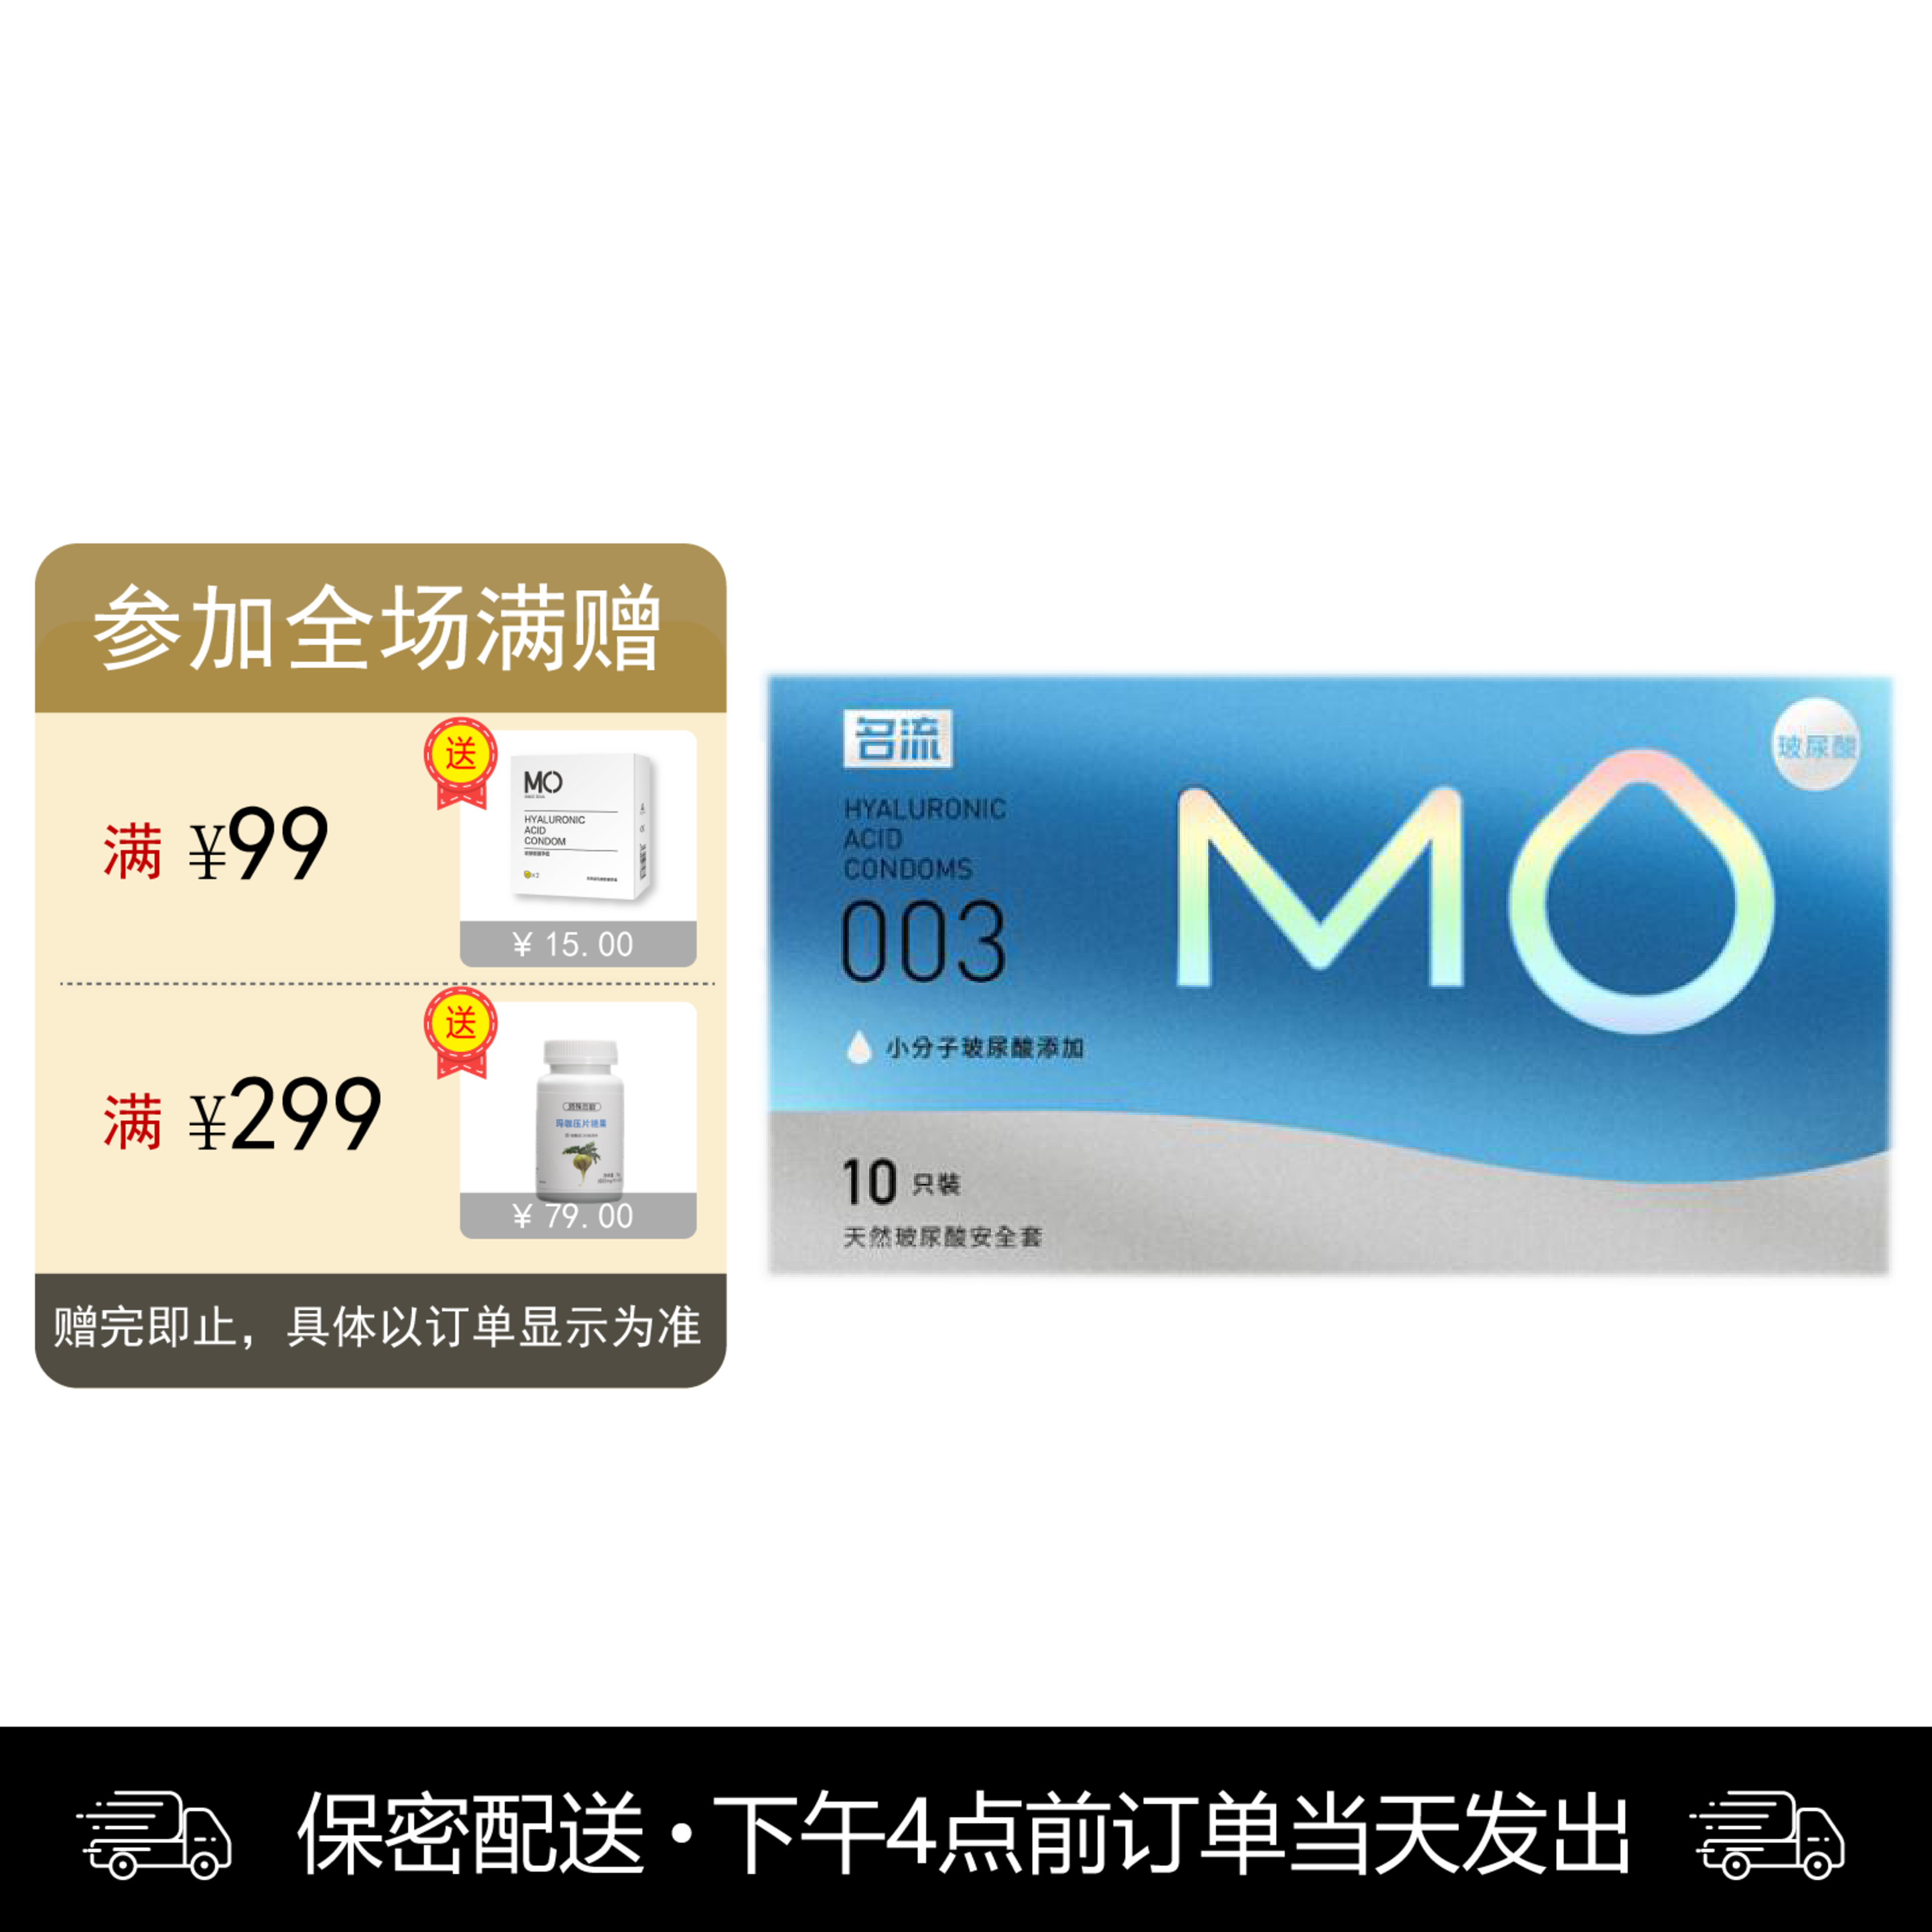 名流 天然胶乳橡胶避孕套 MO玻尿酸-003超薄透明质酸润滑 10只装